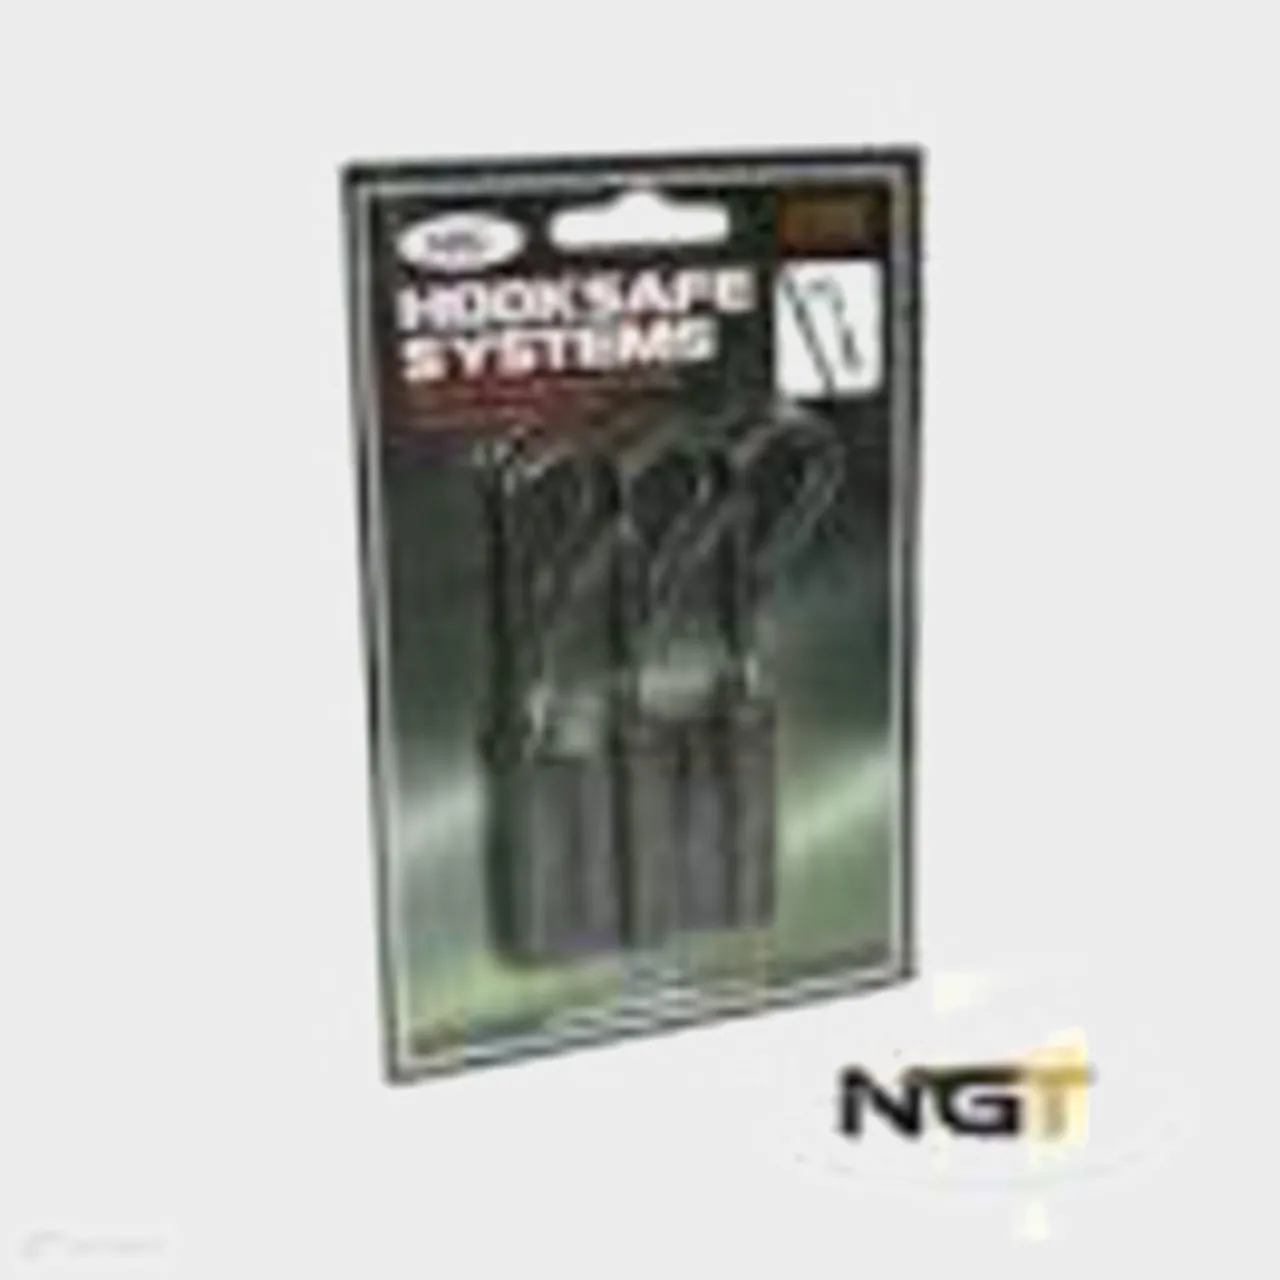 NGT HOOK SAFE SYSTEM 3, Black